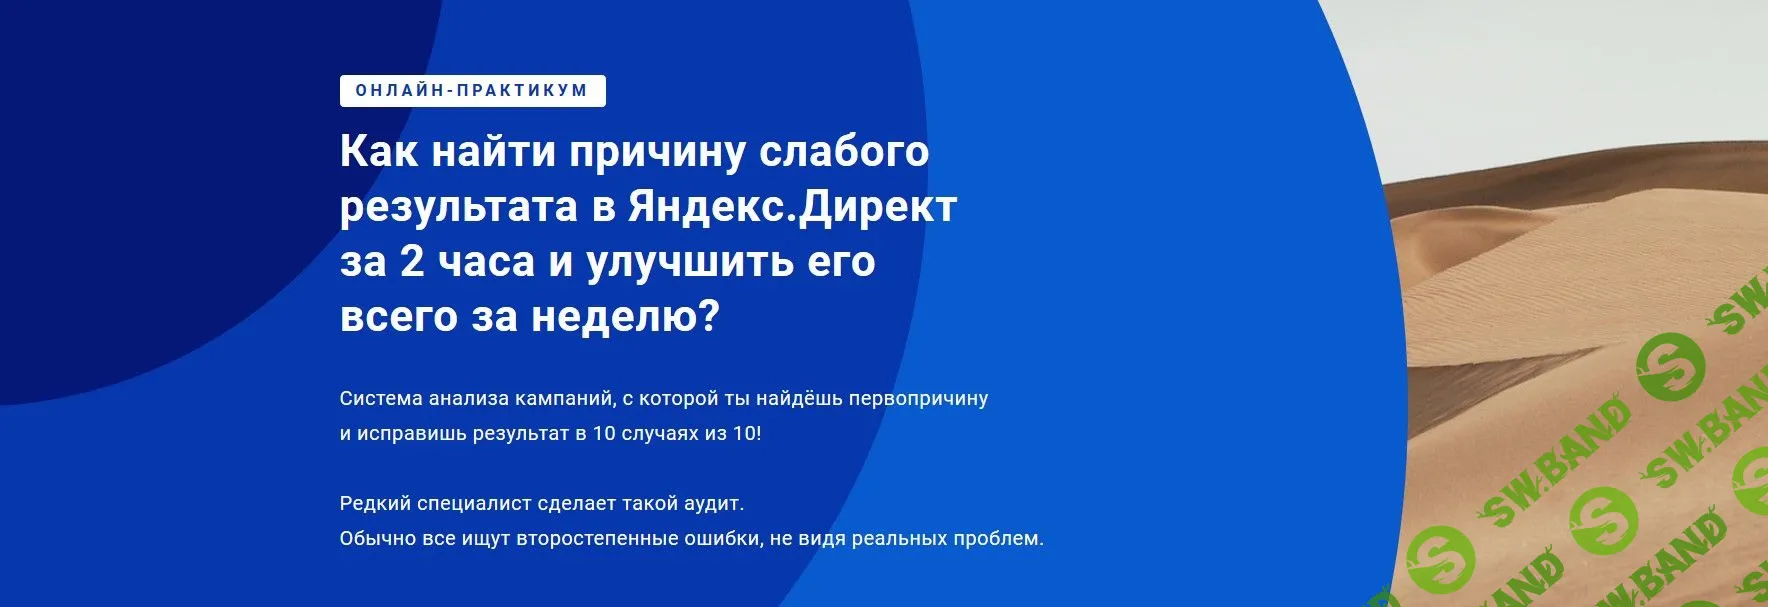 [Филипп Царевский] Как найти причину слабого результата в Яндекс.Директ за 2 часа и улучшить его всего за неделю? (2019)